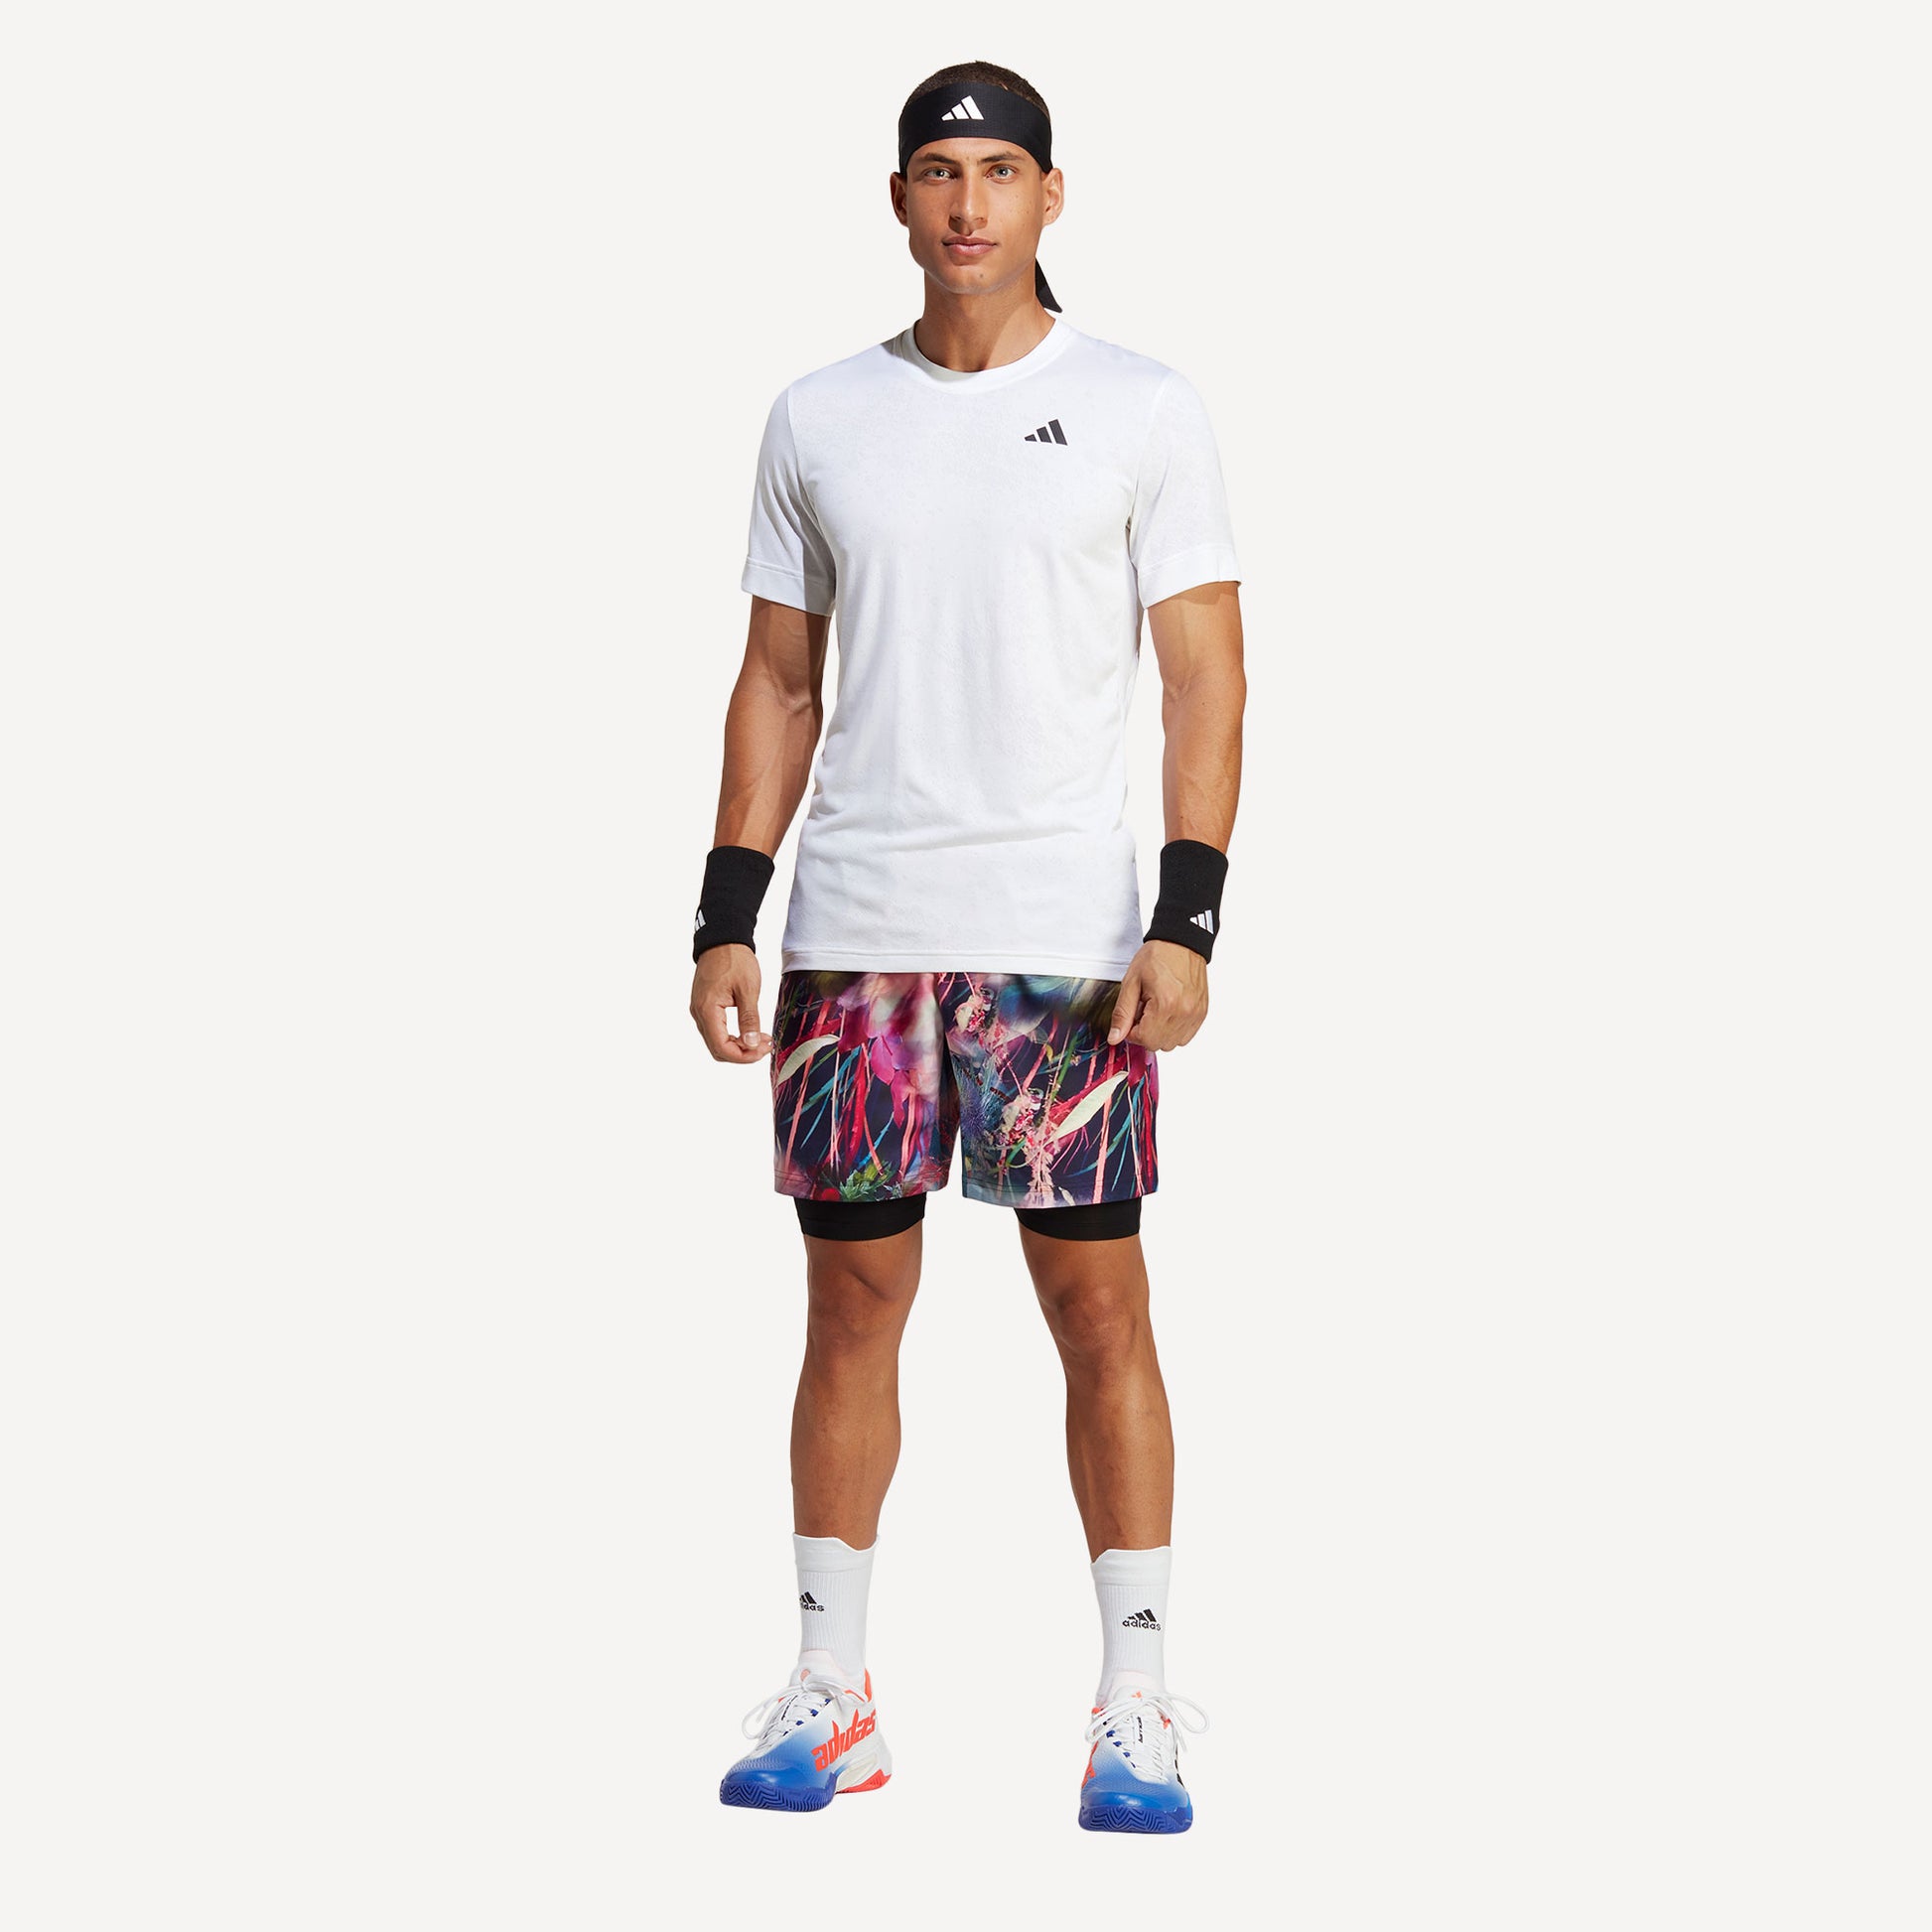 adidas Melbourne Ergo Men's Graphic Tennis Shorts Multicolor (5)